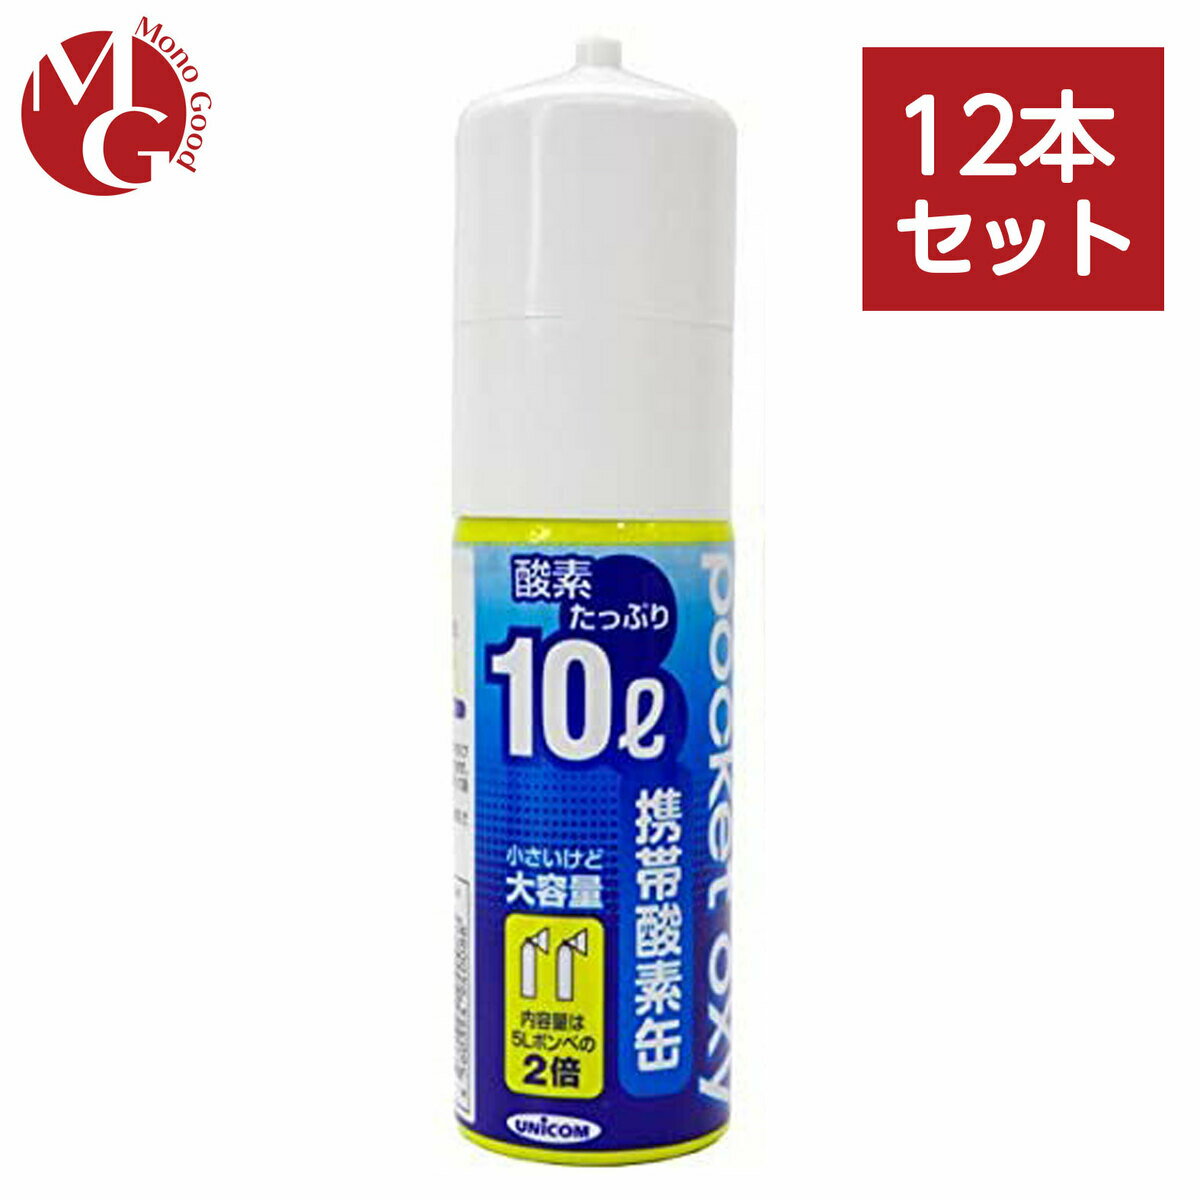 ユニコム 携帯酸素缶 ポケットオキシ POX04 12本セット